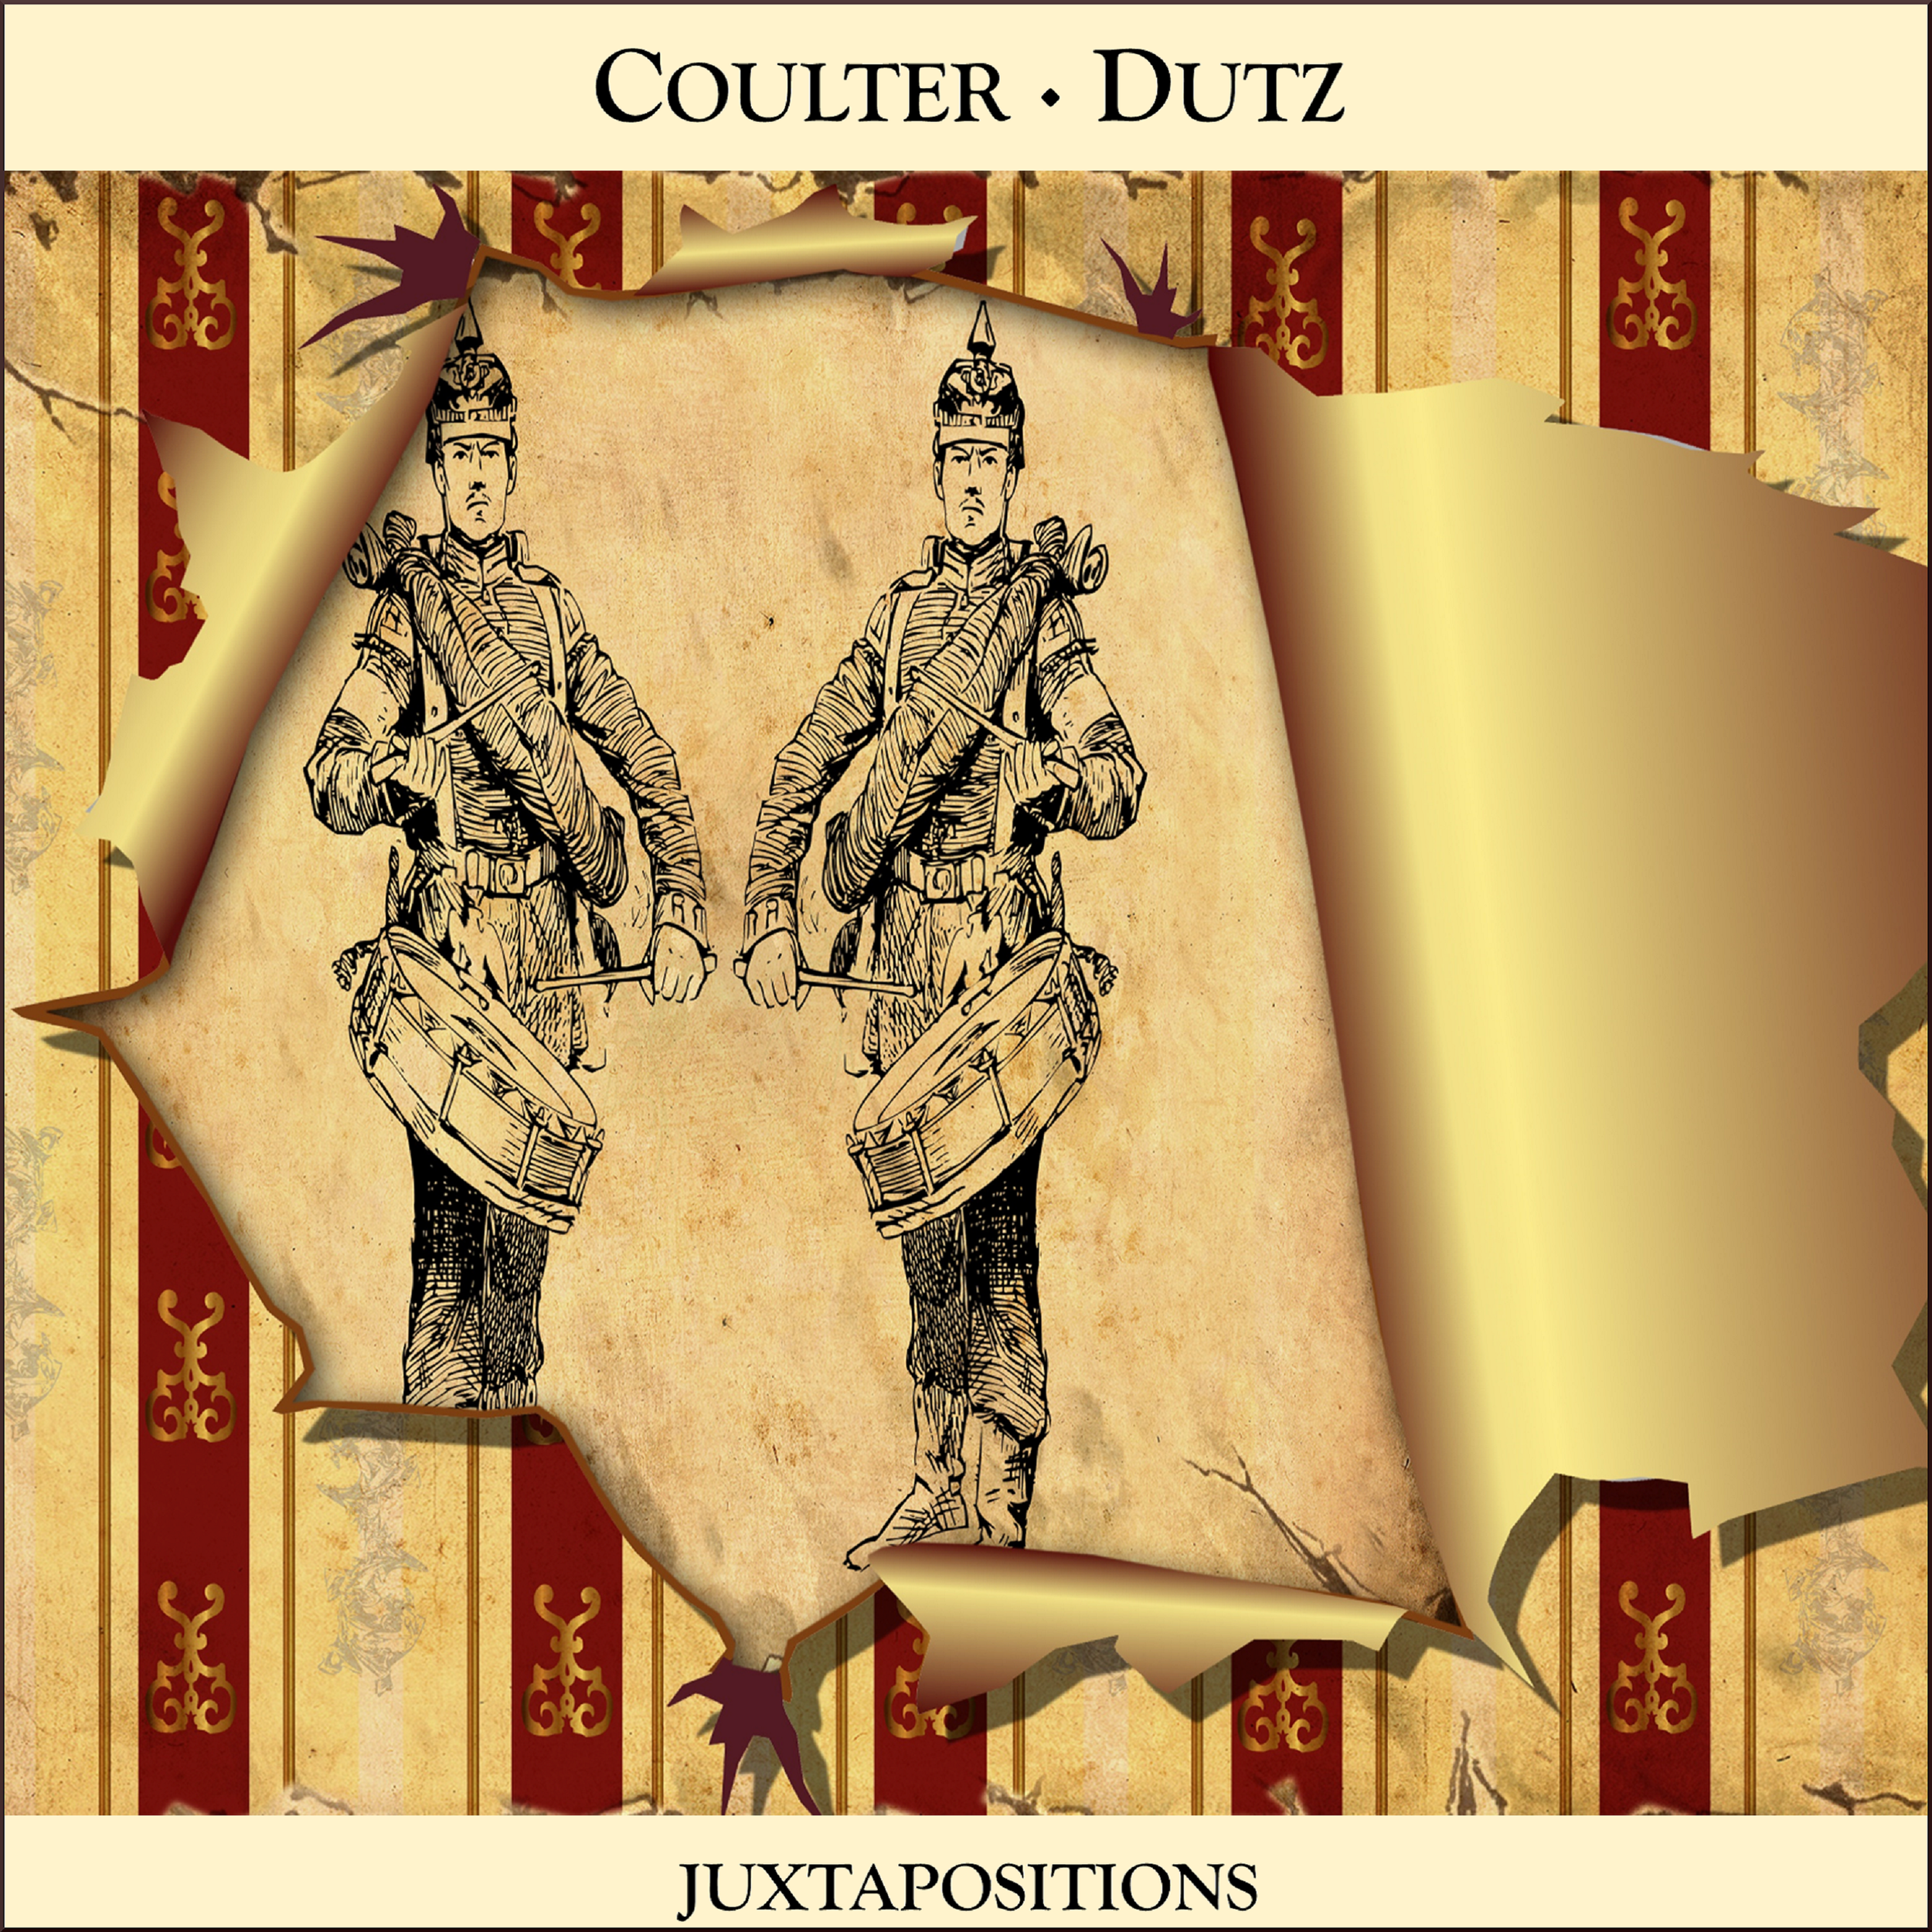 Coulter-Dutz: Juxtapositions